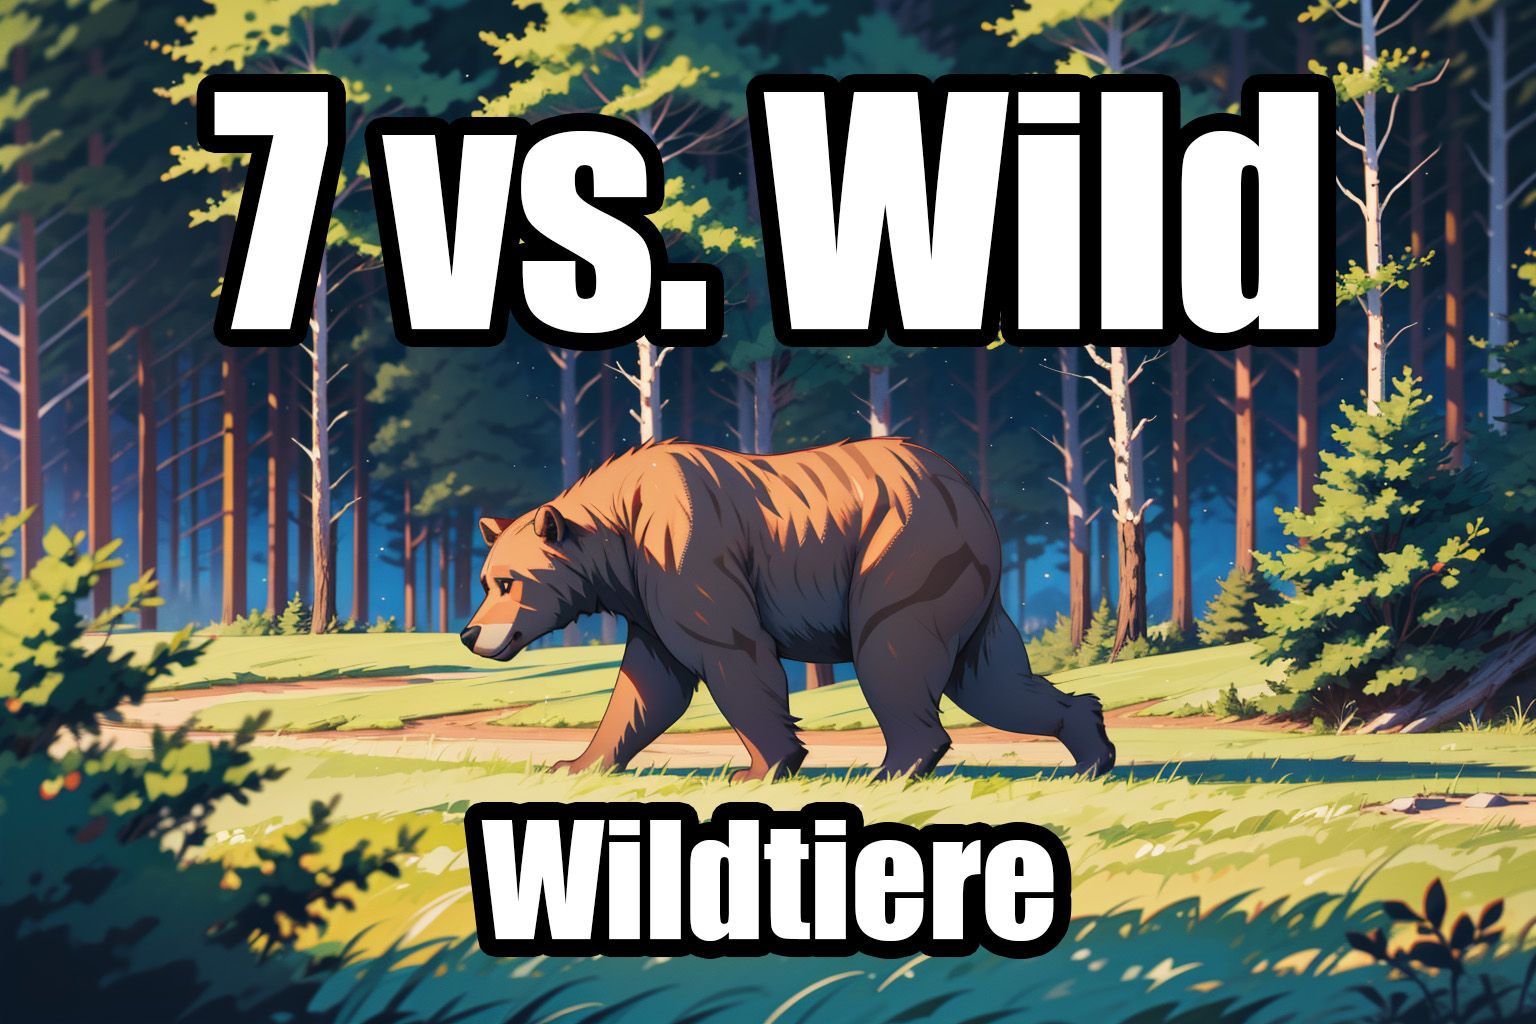 7 vs. Wild: Staffel 3 - Welche Fauna / Wildtiere wird es vor Ort geben?